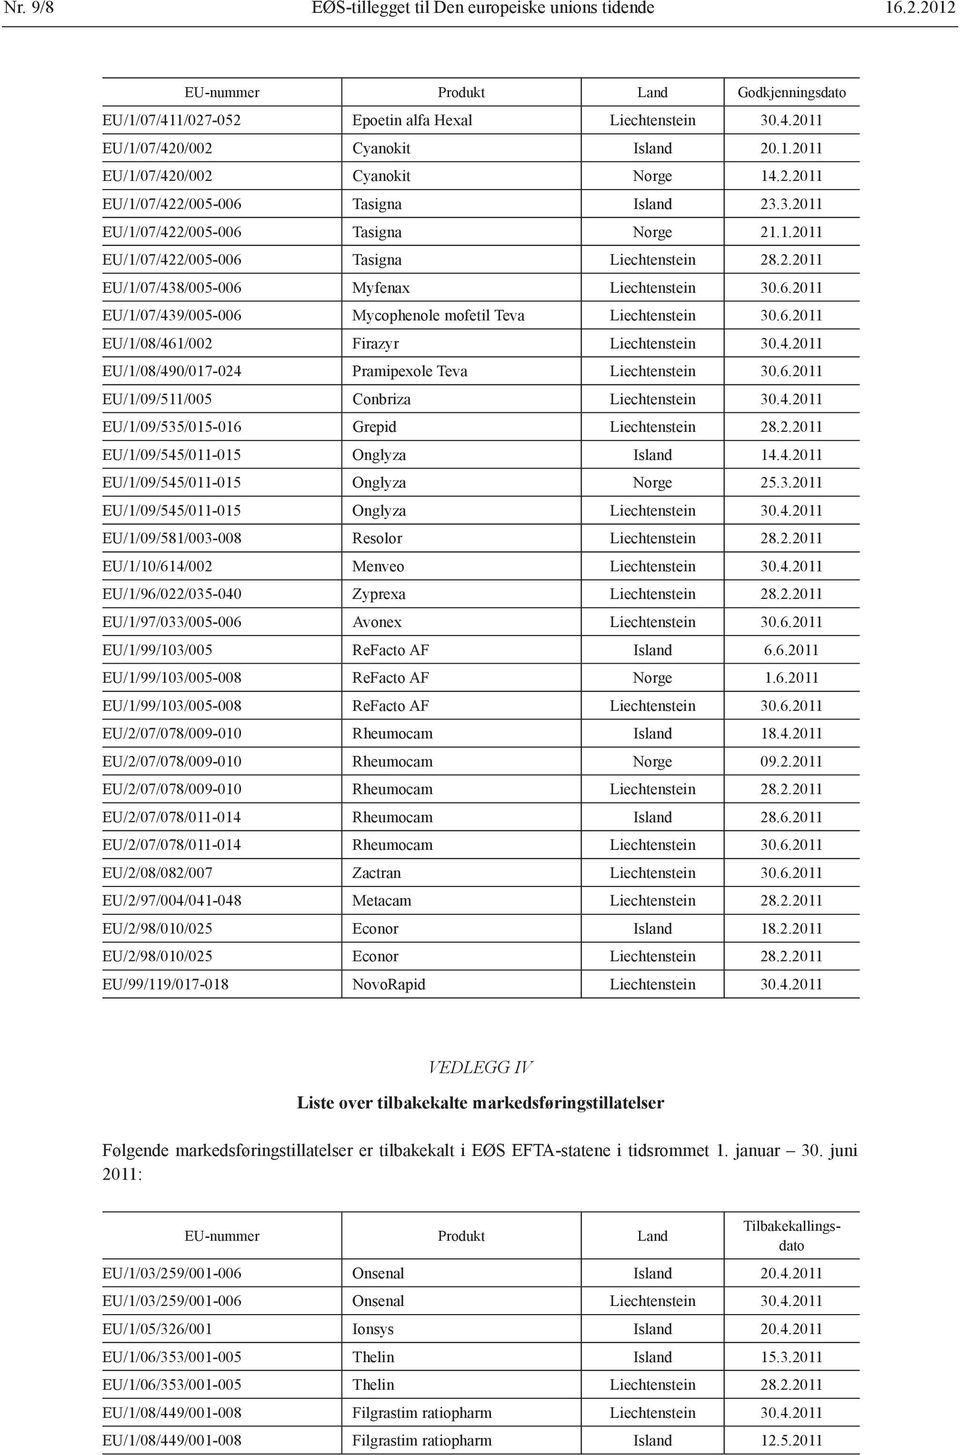 6.2011 EU/1/07/439/005-006 Mycophenole mofetil Teva Liechtenstein 30.6.2011 EU/1/08/461/002 Firazyr Liechtenstein 30.4.2011 EU/1/08/490/017-024 Pramipexole Teva Liechtenstein 30.6.2011 EU/1/09/511/005 Conbriza Liechtenstein 30.